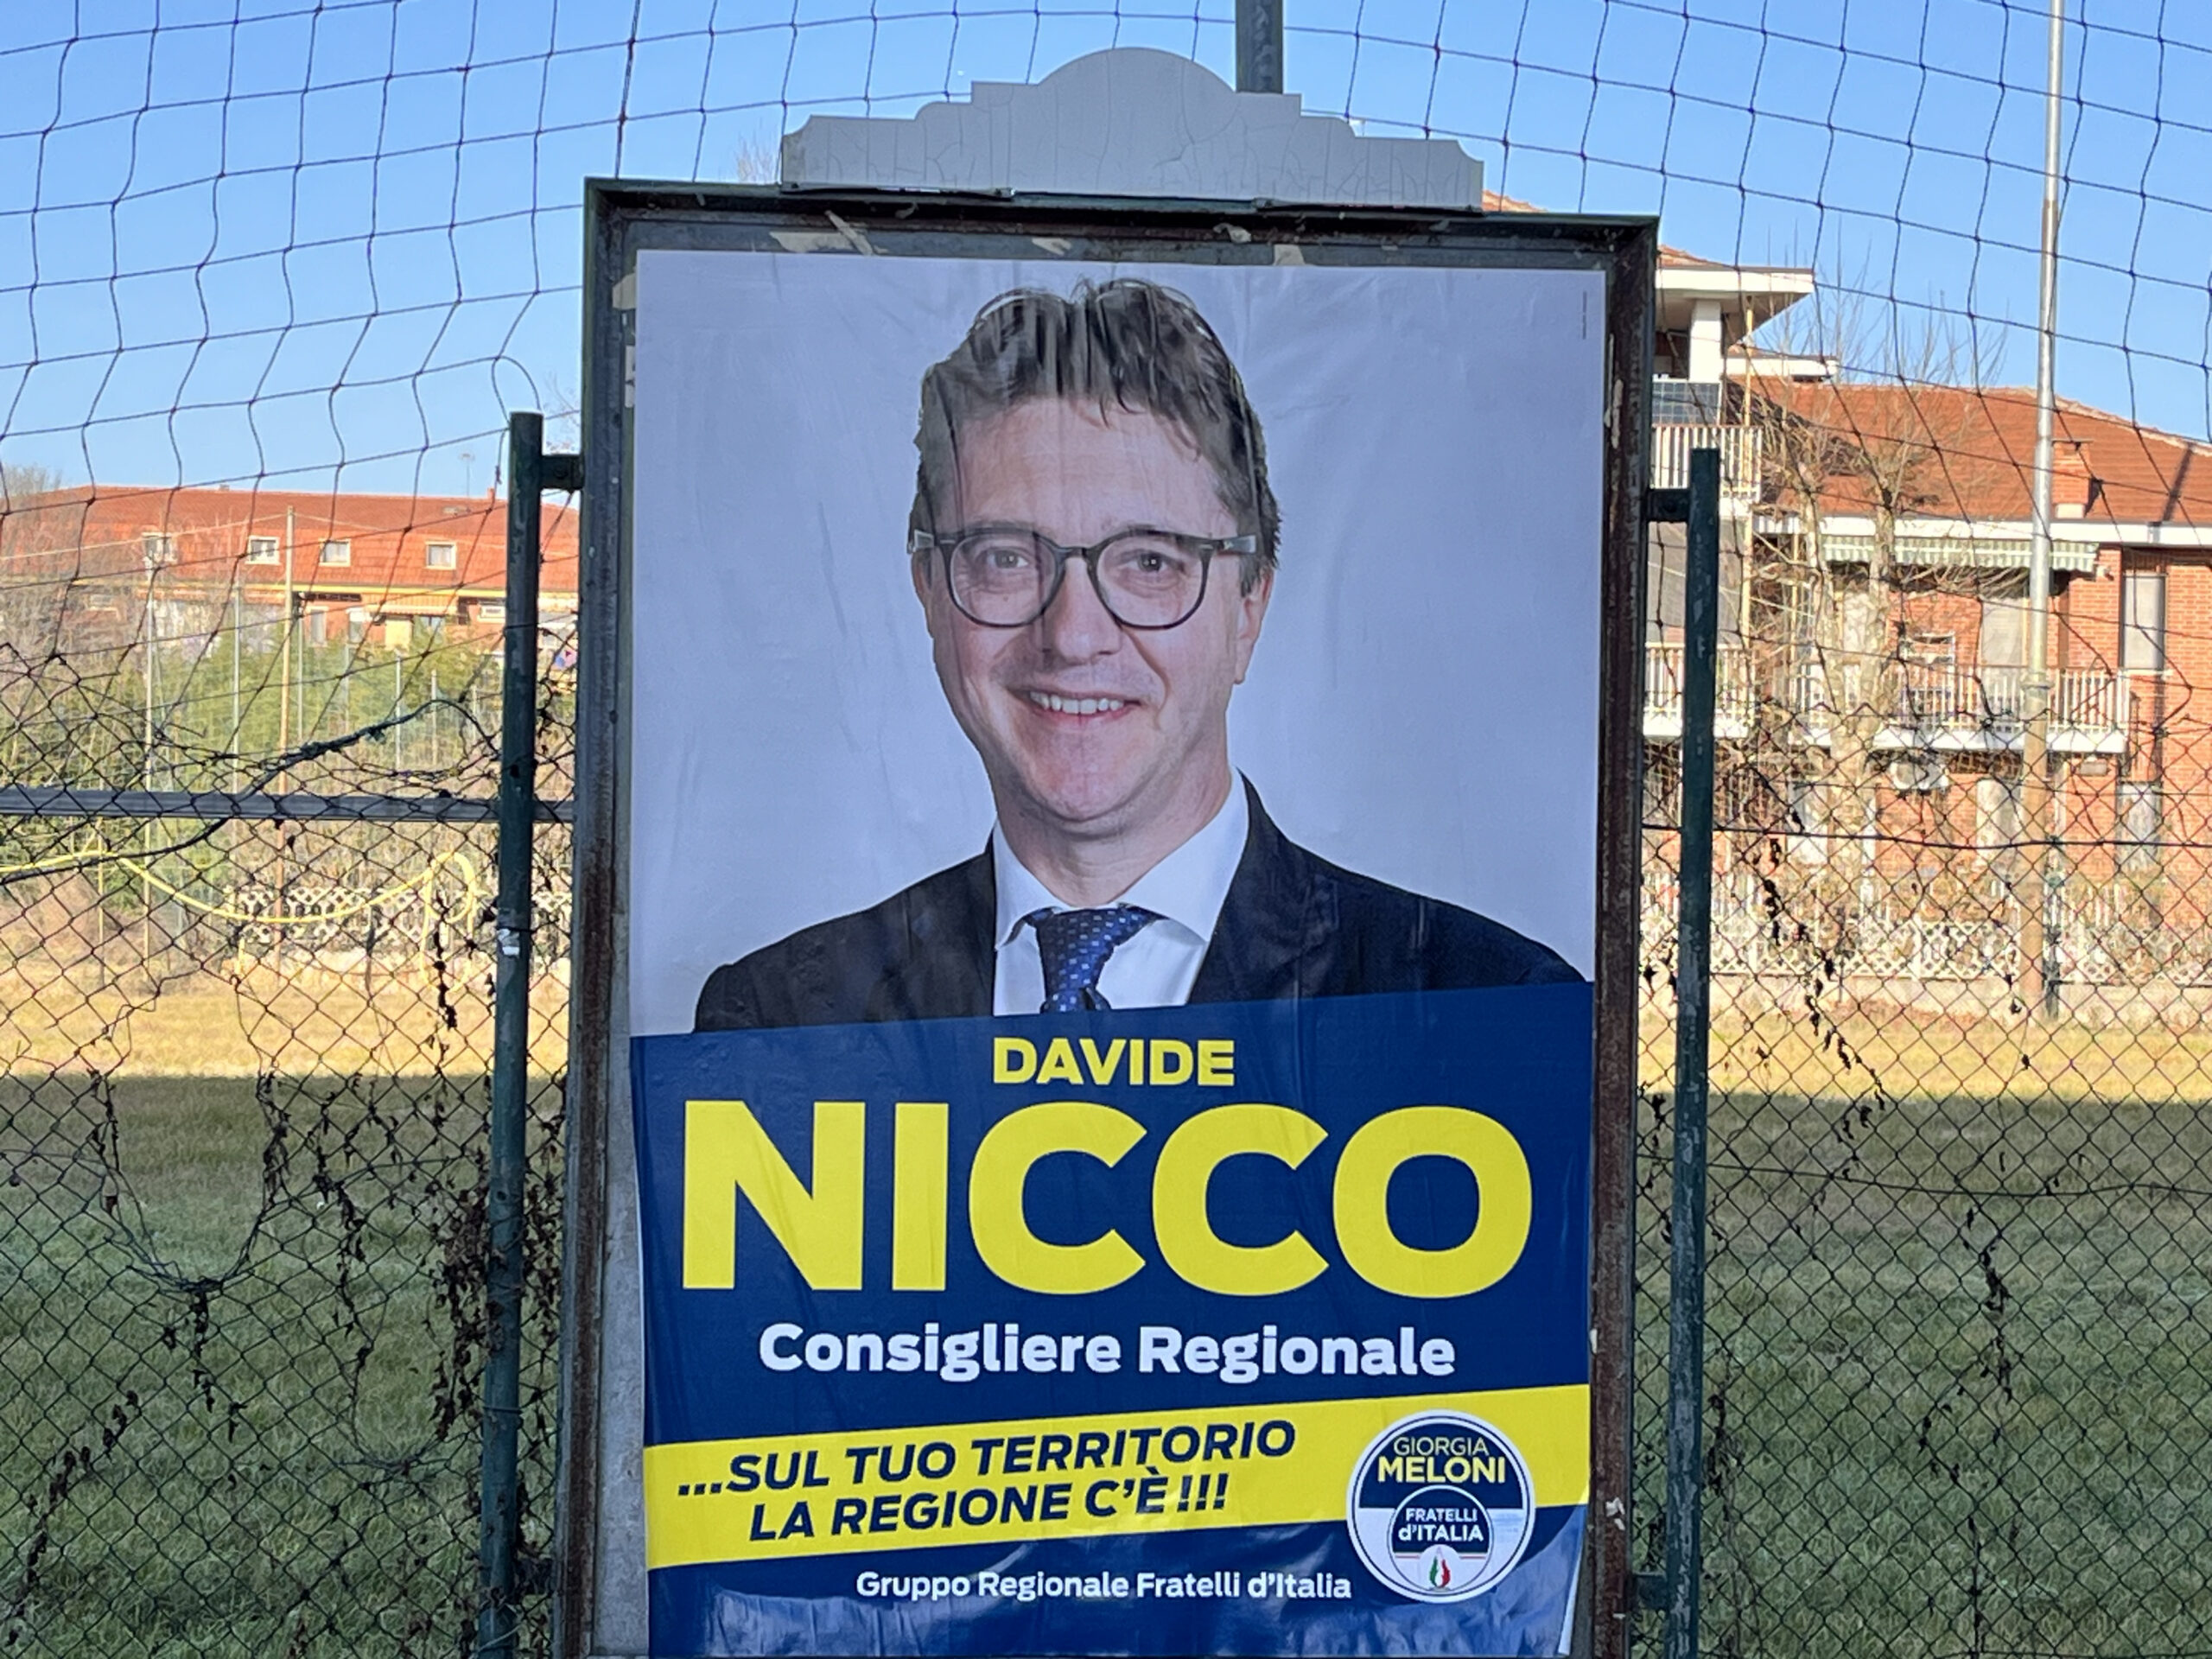 Davide Nicco. 350 preferenze in città